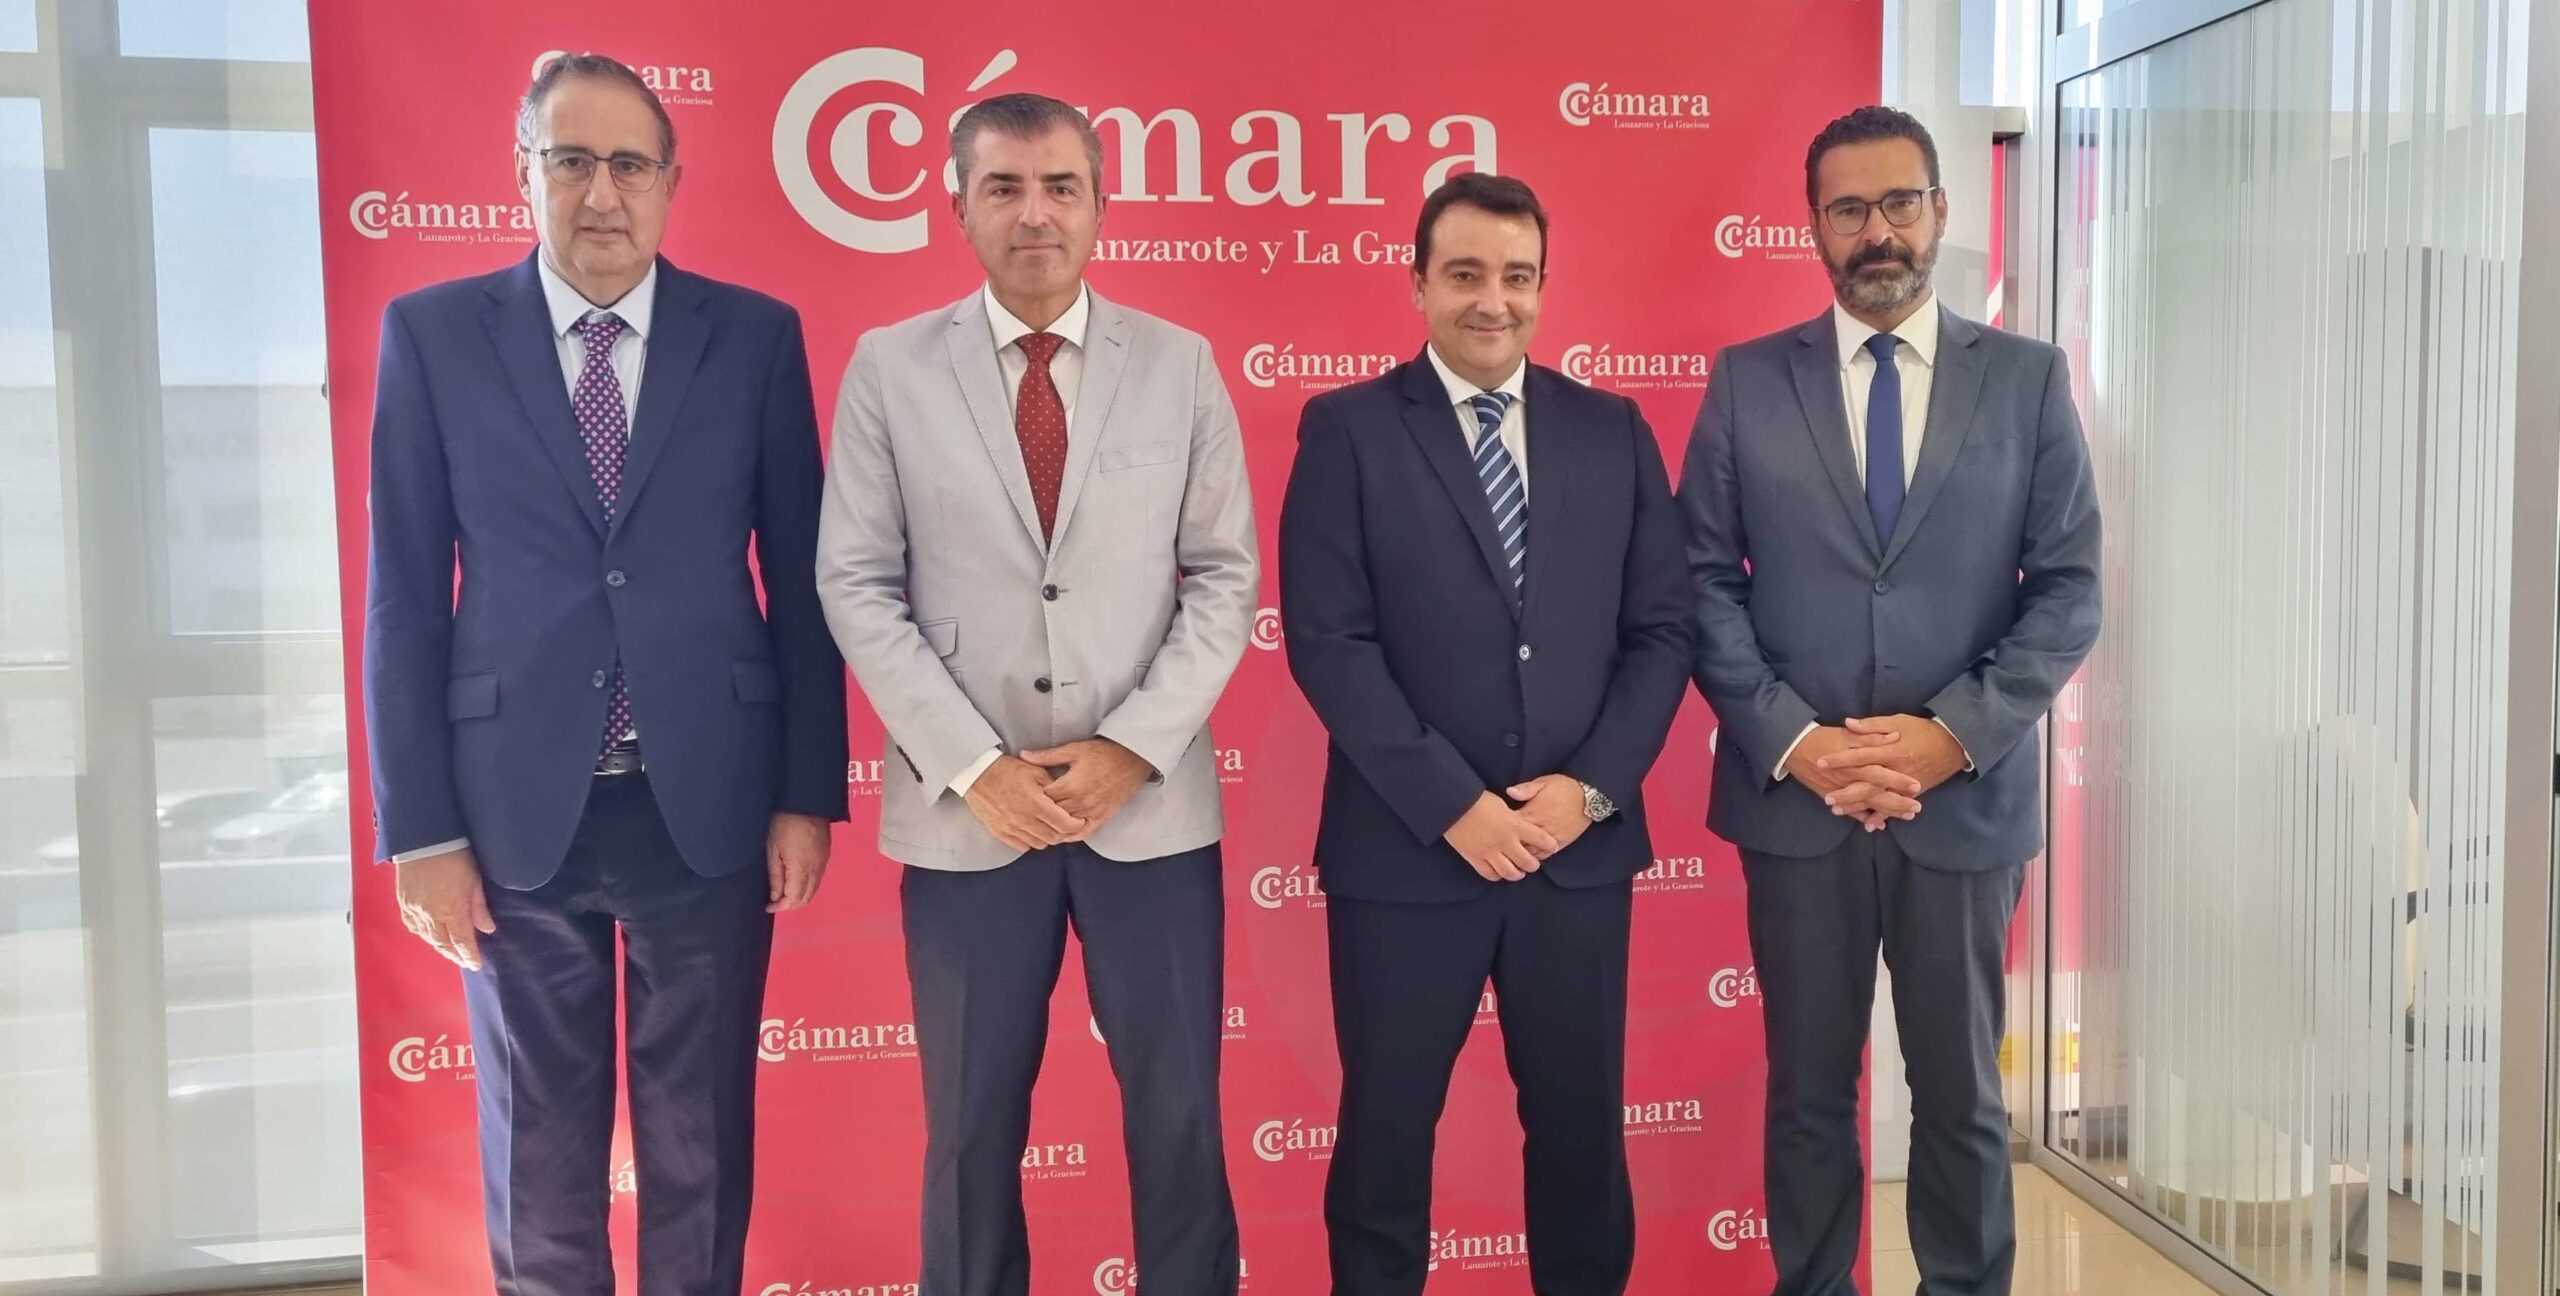 Manuel Domínguez se reúne con José Valle para aunar estrategias durante su visita a la Cámara de Comercio de Lanzarote y La Graciosa